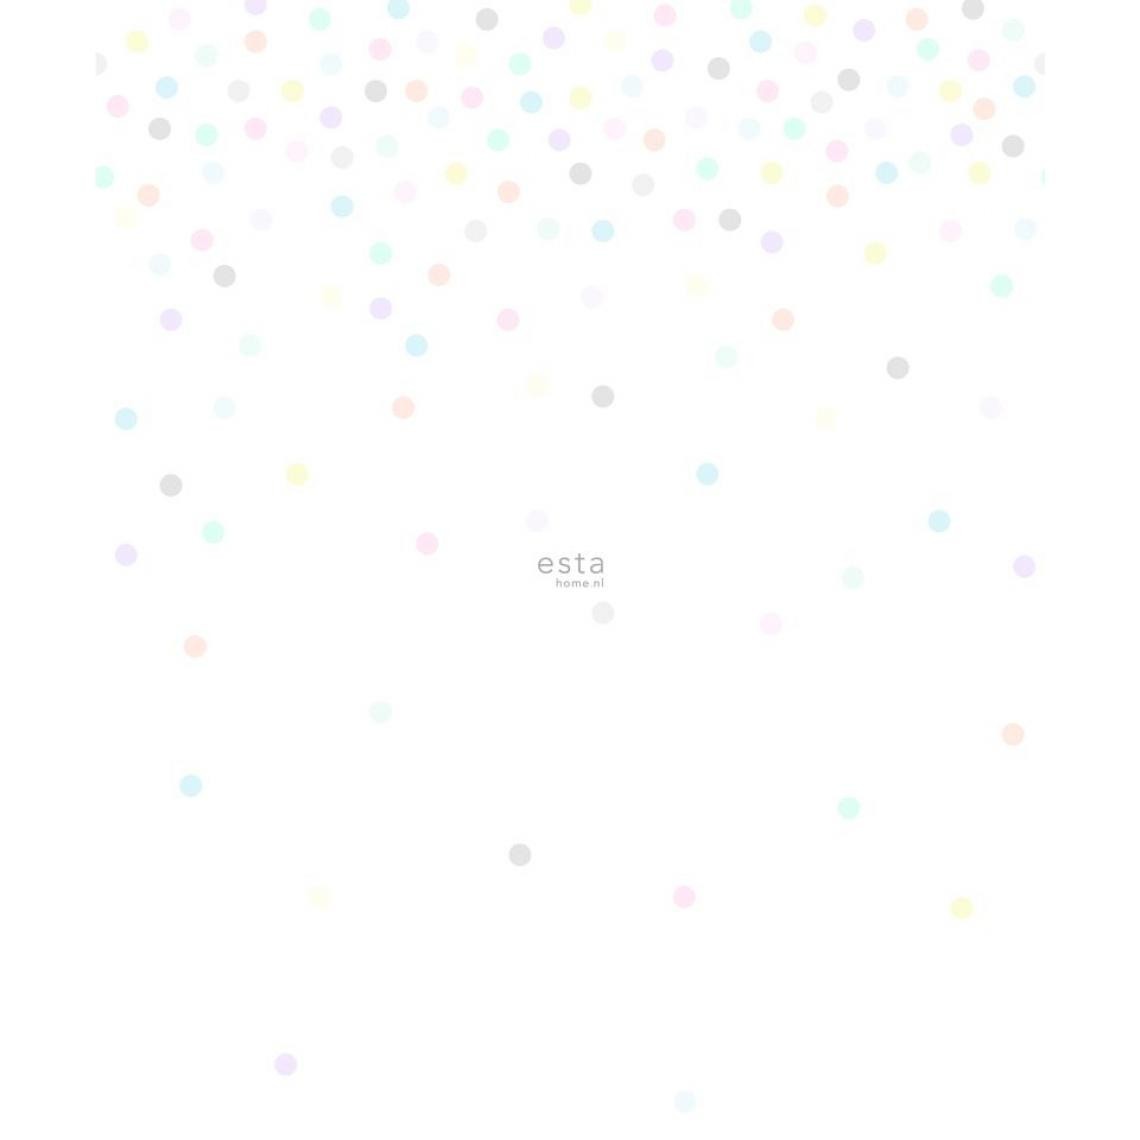 ESTAhome - ESTAhome papier peint panoramique à motif de petits points gris, jaune, violet, rose clair, vert menthe, bleu et orange - 158858 - 232 x 279 cm - Papier peint